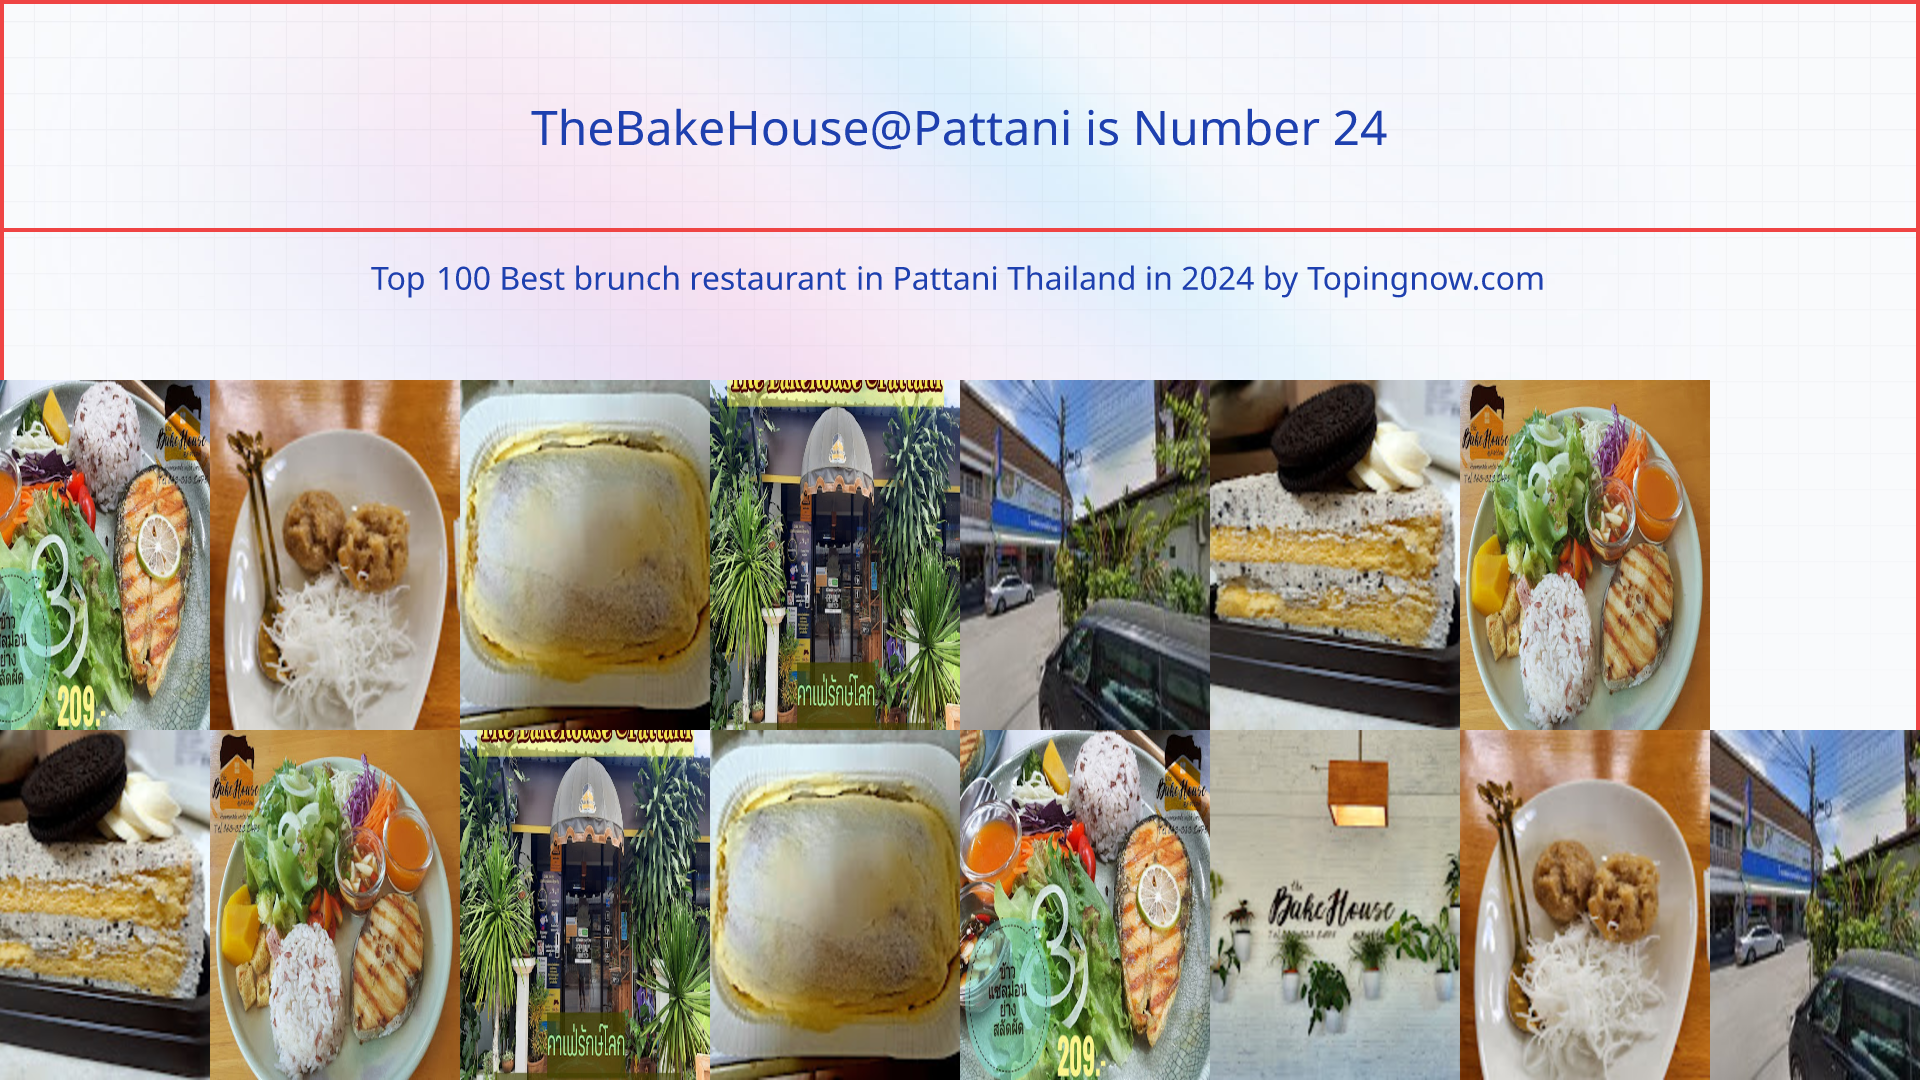 TheBakeHouse@Pattani: Top 100 Best brunch restaurant in Pattani Thailand in 2024